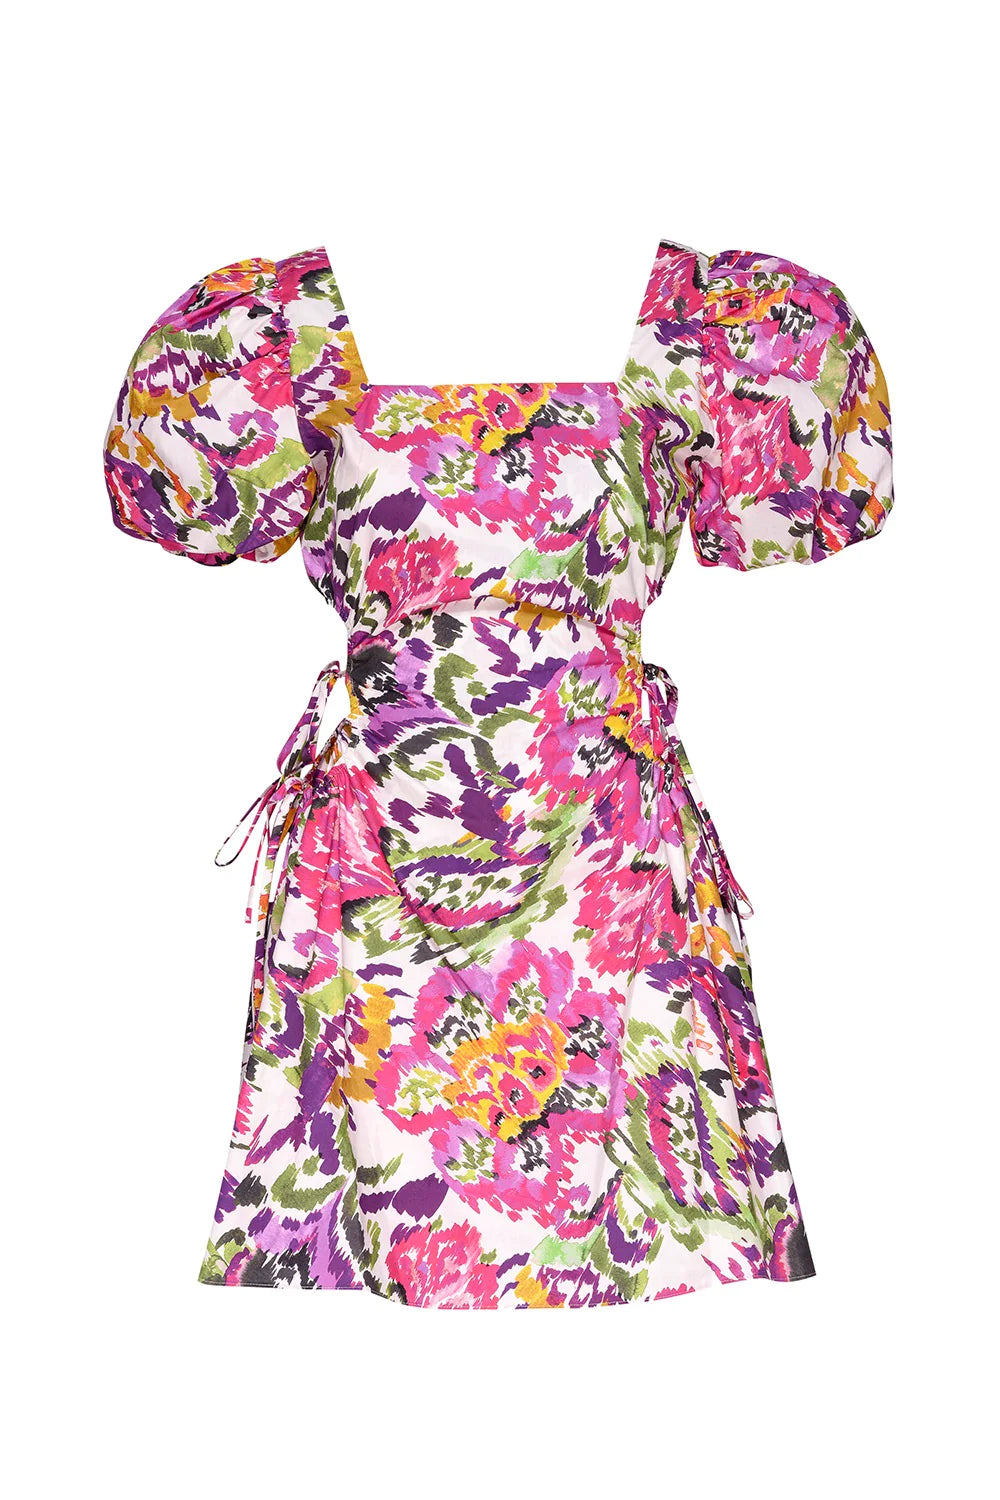 Misa Alec Cutout Mini Dress in Flora Splash